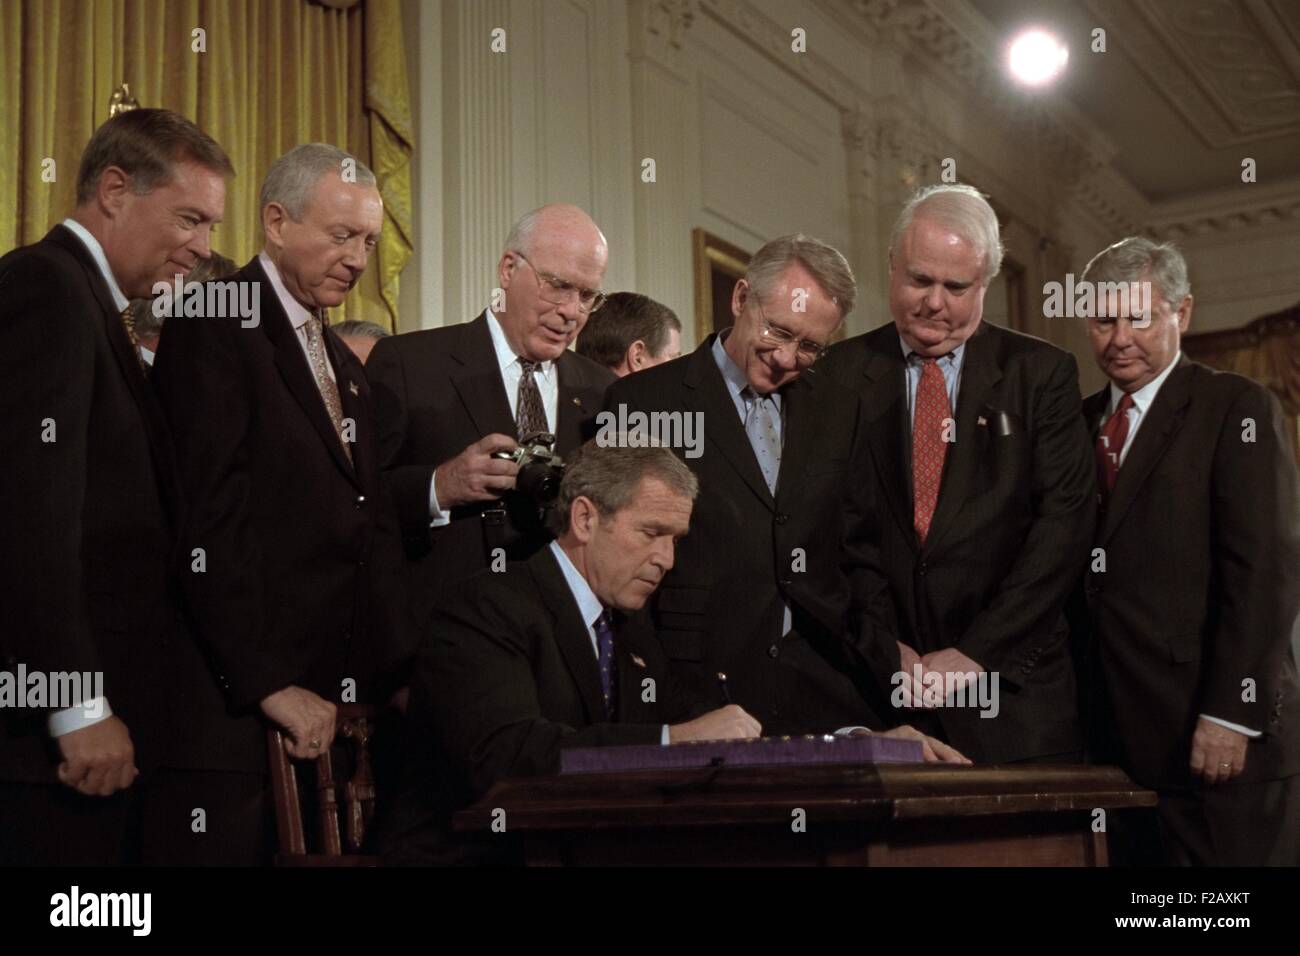 El presidente George W. Bush firma la Ley USA Patriot en Octubre 26,2001. "Esta nueva ley que firmo hoy permitirá la vigilancia de todas las comunicaciones utilizadas por los terroristas, incluidos los mensajes de correo electrónico, la Internet, y los teléfonos celulares." de pie detrás de Bush 43 de izquierda a derecha son: U.S. AG, John Ashcroft; el senador Orrin Hatch; el Senador Patrick Leahy, el senador Harry Reid; el Representante James Sensenbrenner, y el Senador Bob Graham. (BSLOC 2015 2 178) Foto de stock